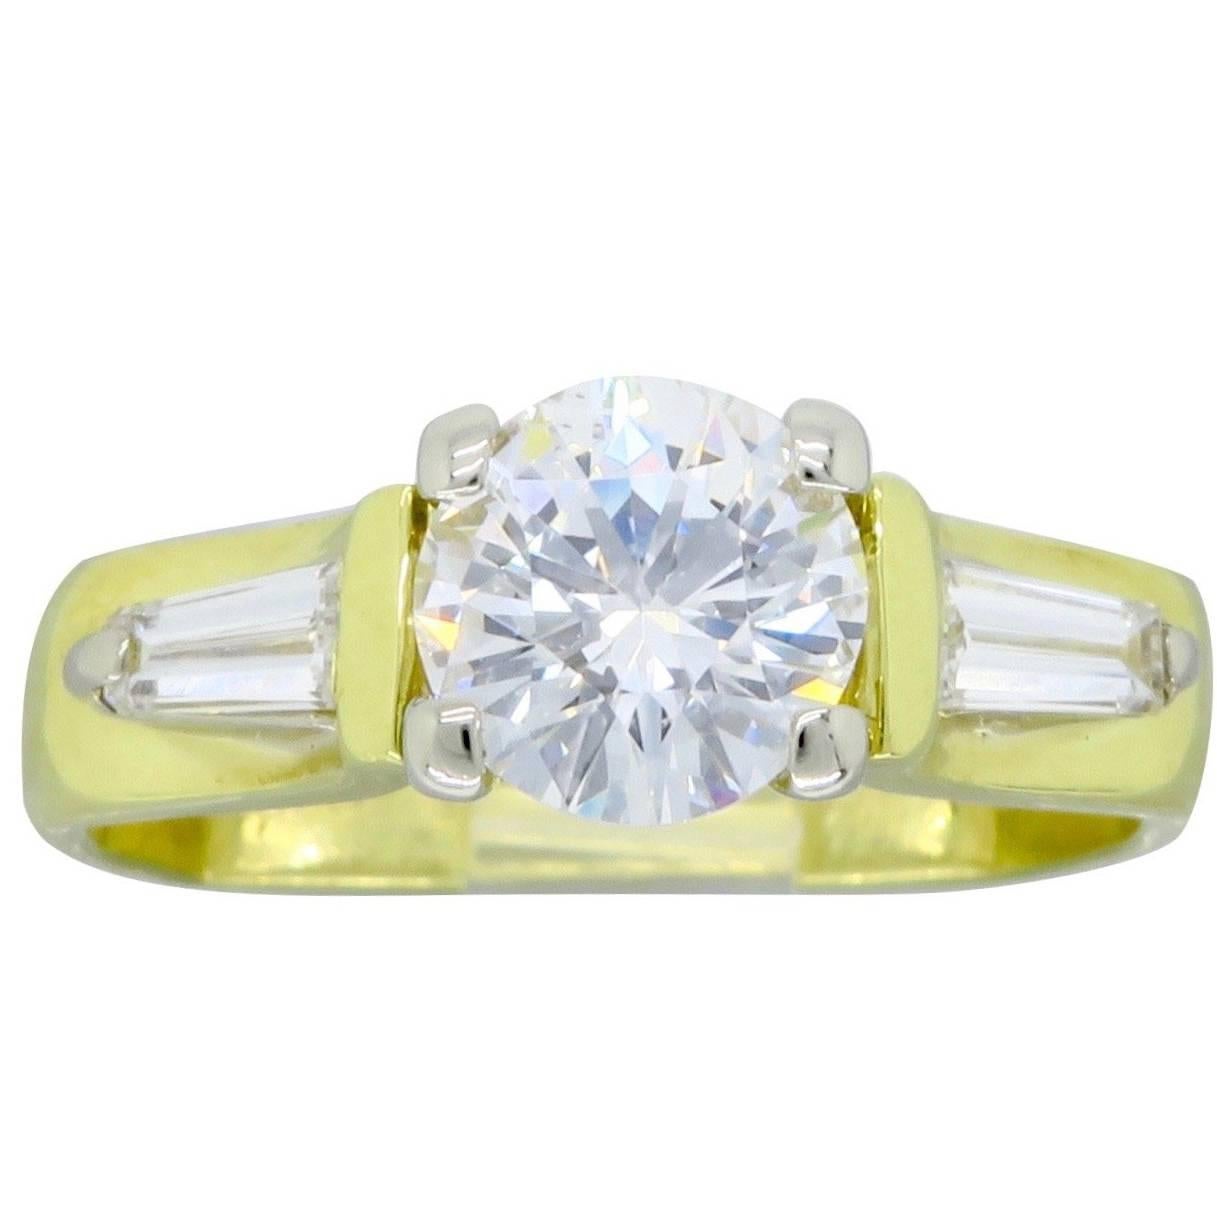 1.29 Carat Diamond 18 Karat Gold Engagement Ring